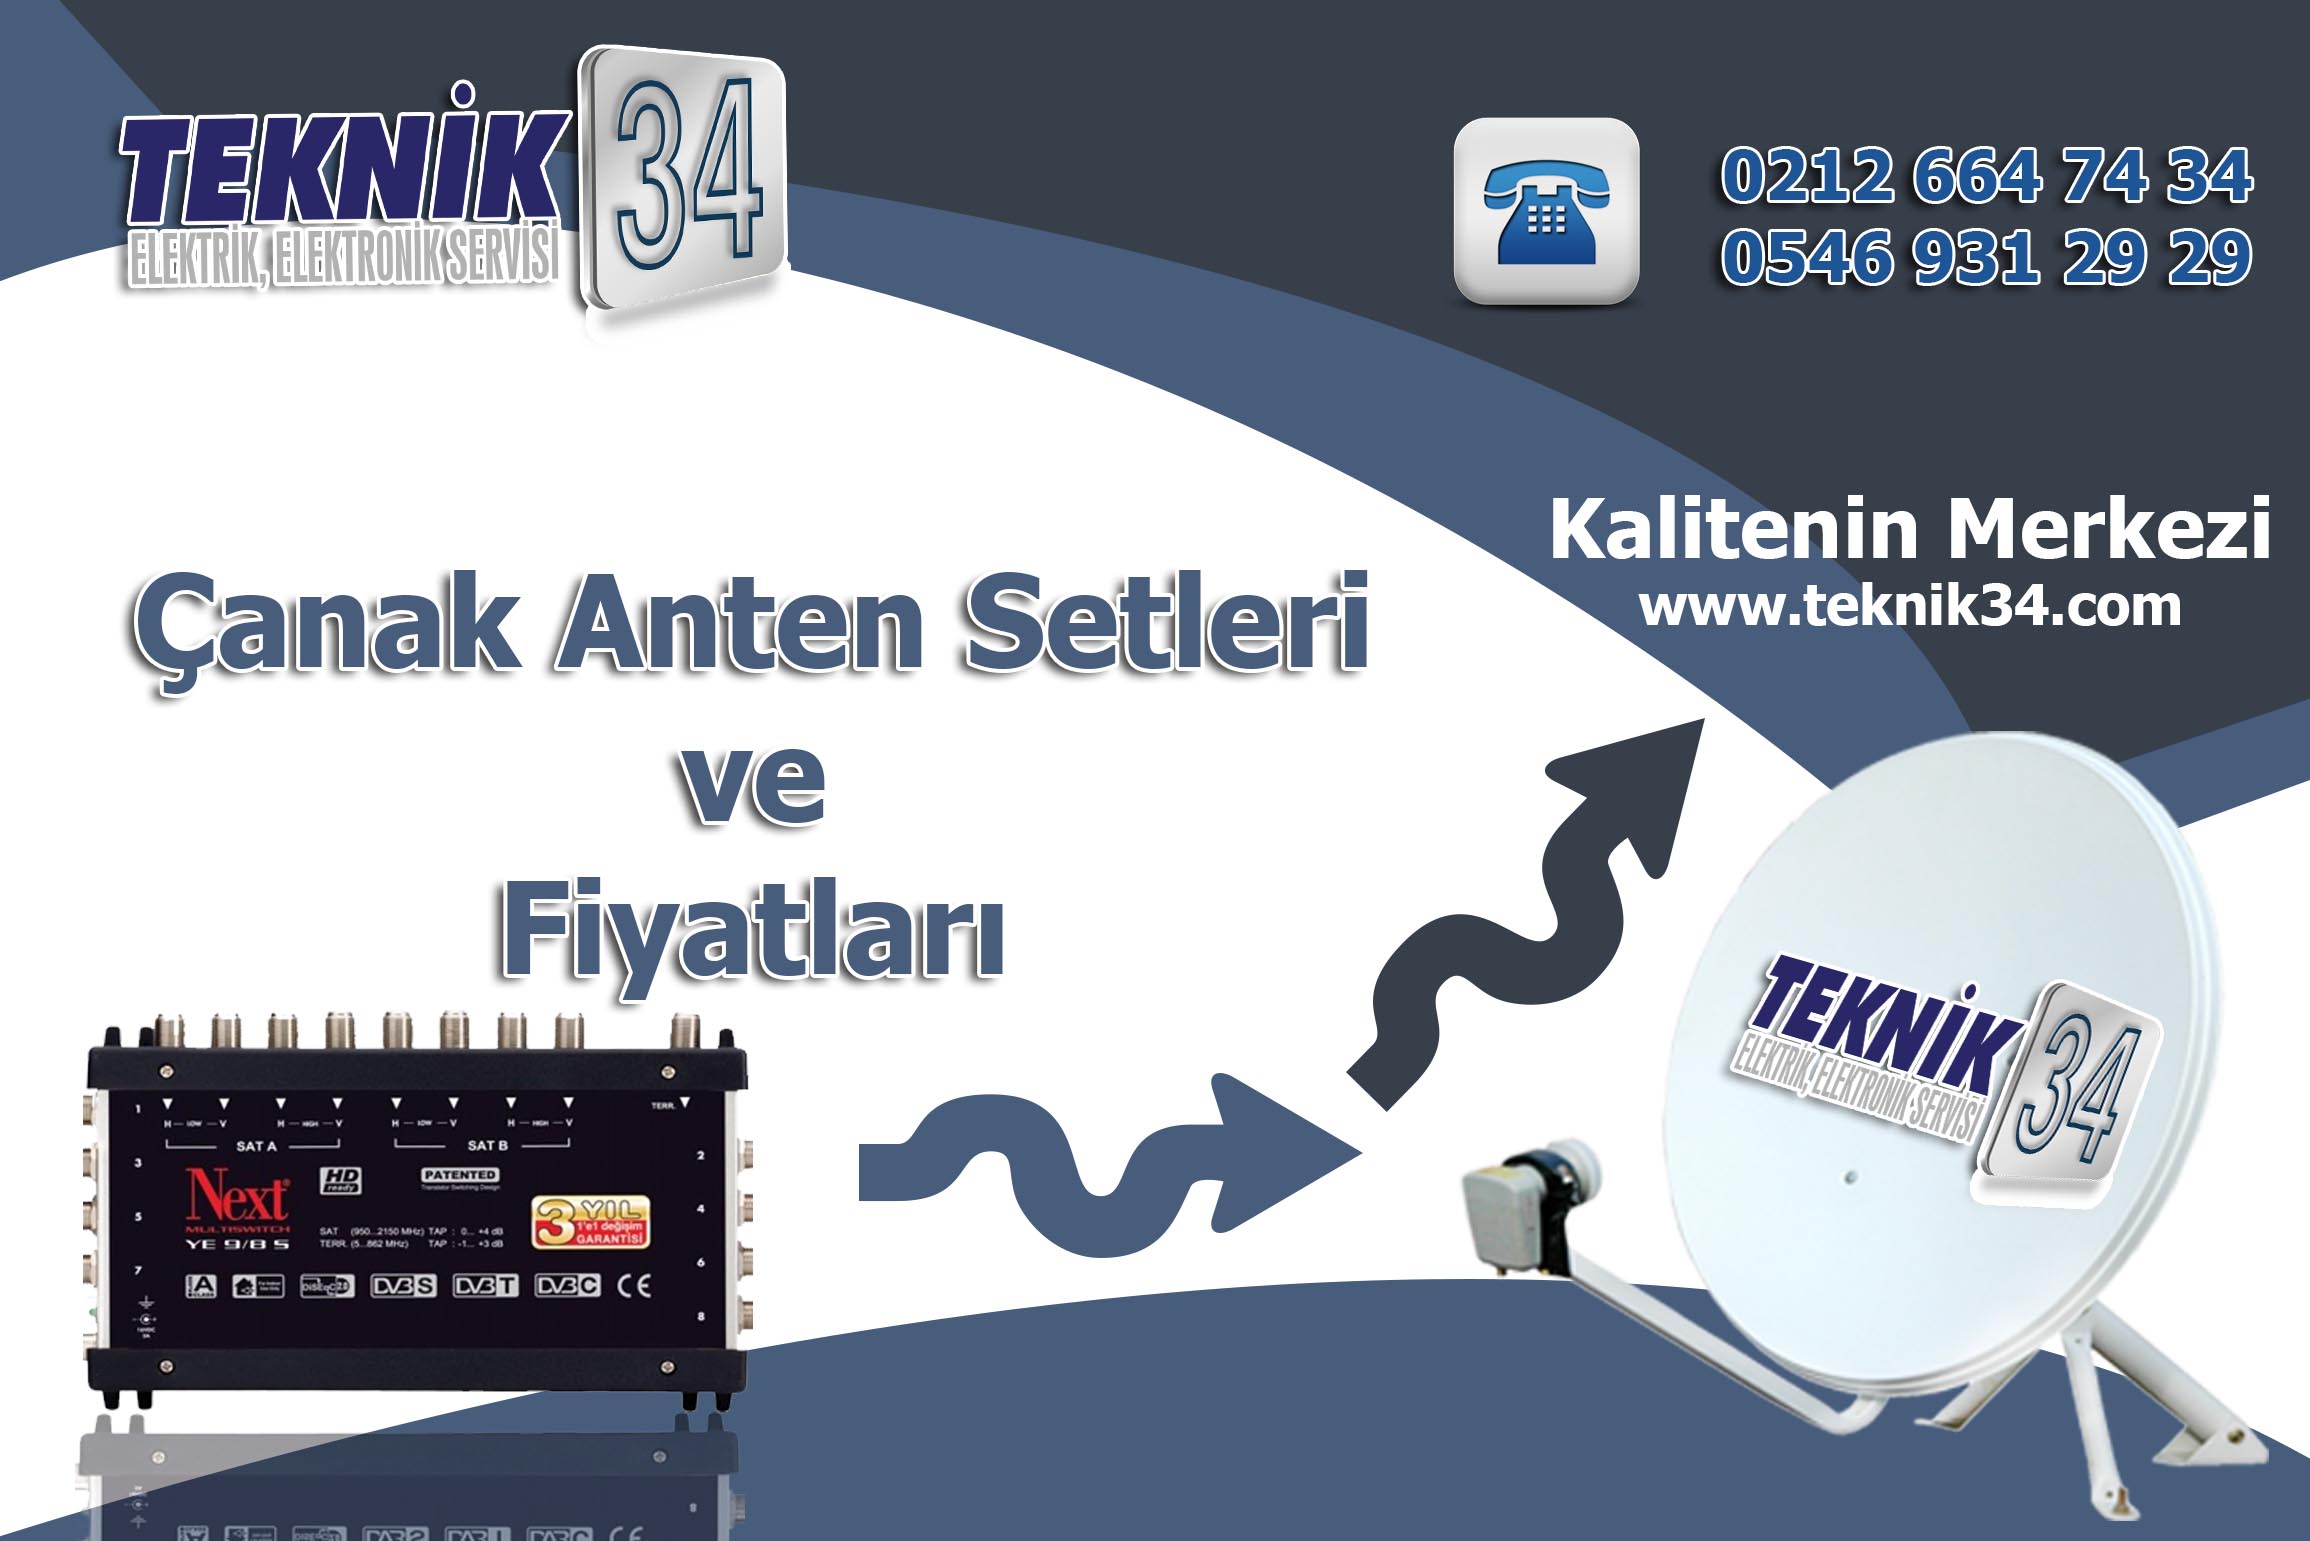 Çanak Anten Seti Fiyatları Teknik 34